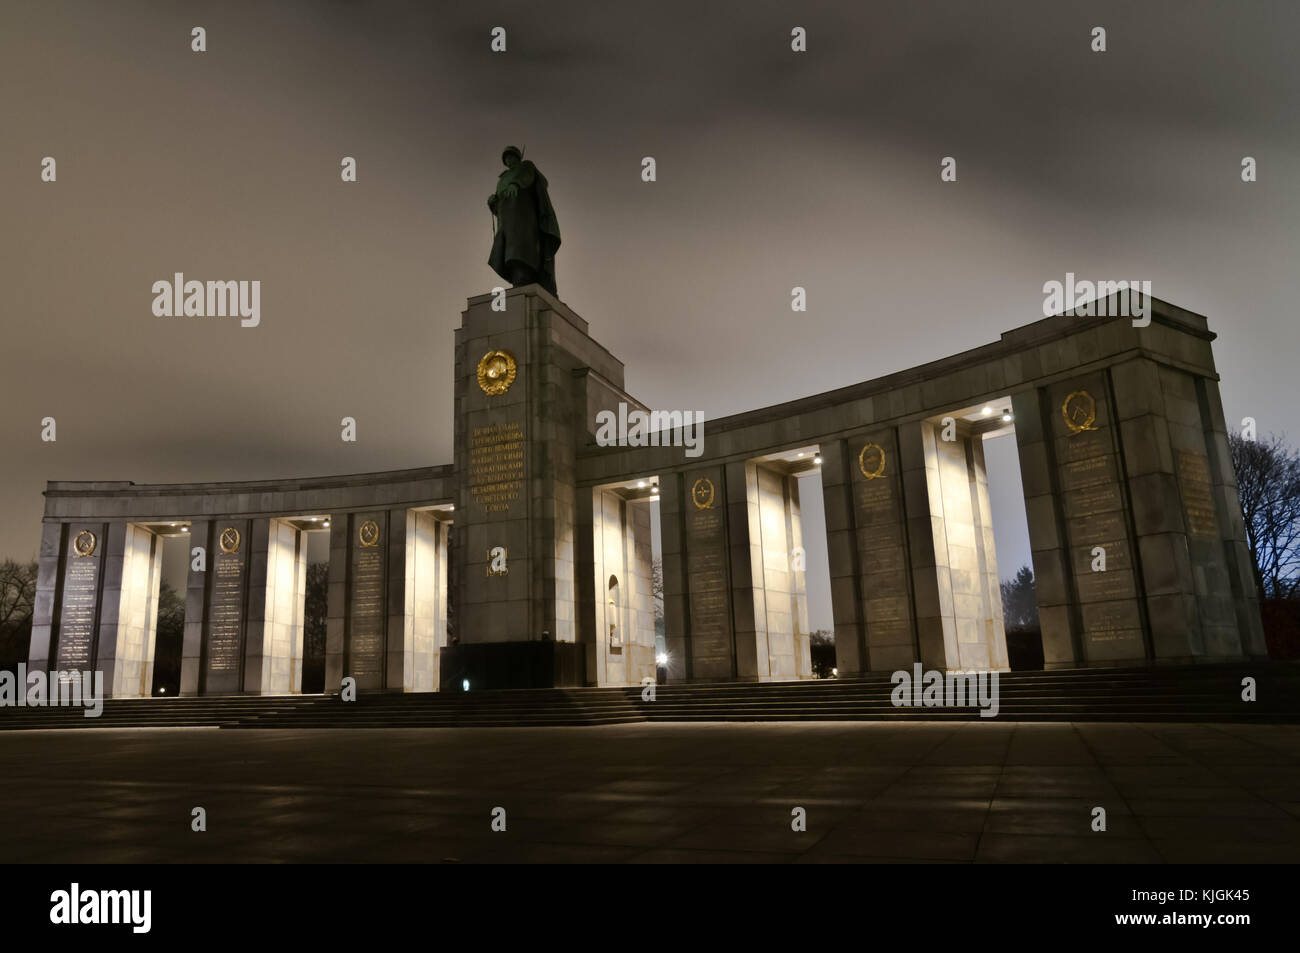 Monument commémoratif de guerre soviétique Tiergarten à Berlin en l'honneur des soldats soviétiques contre le fascisme. Banque D'Images